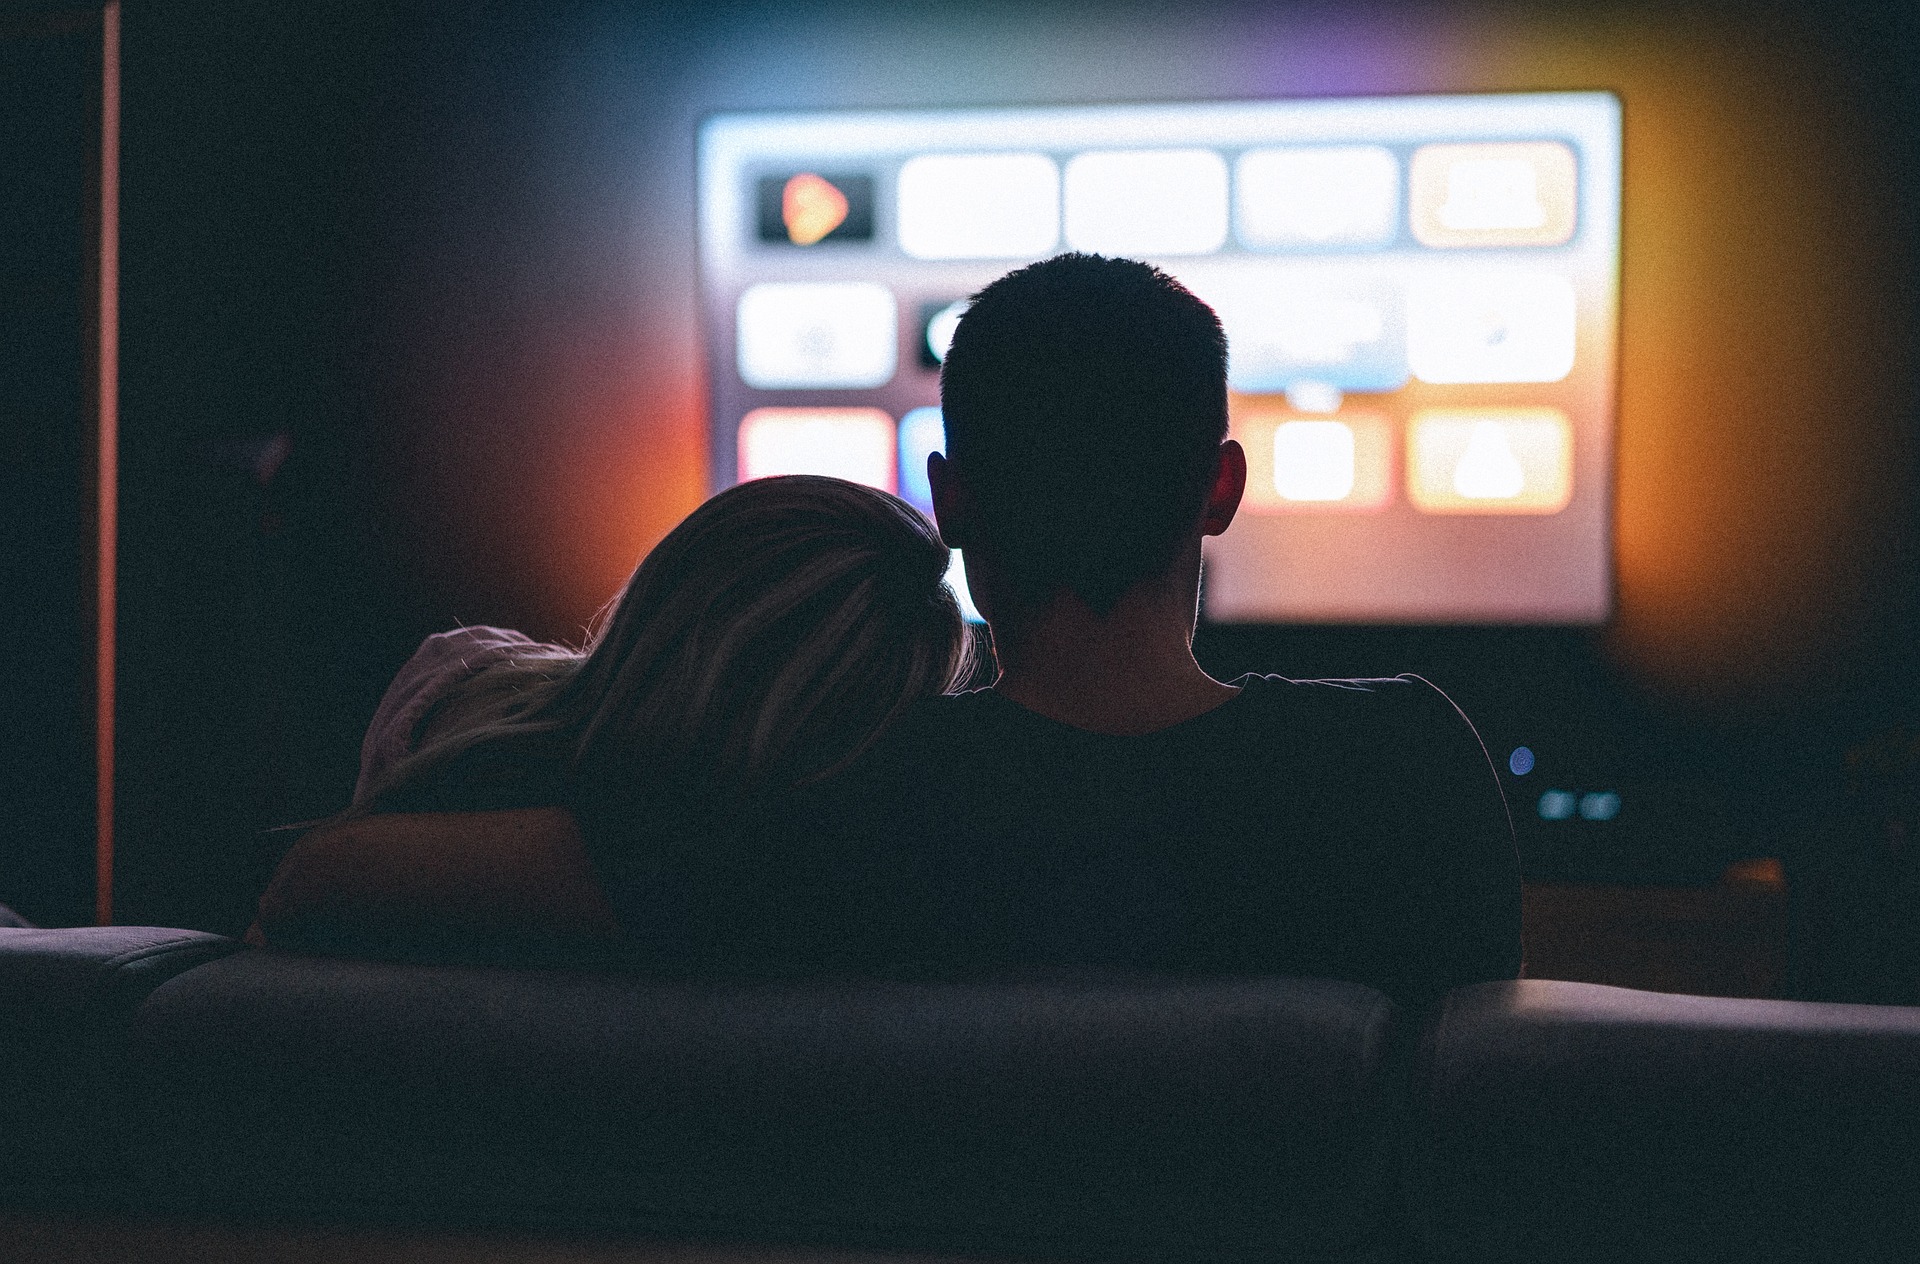 嫉妬深いツインレイ男性がツインレイ女性の肩に腕をまわしてテレビを見ている画像